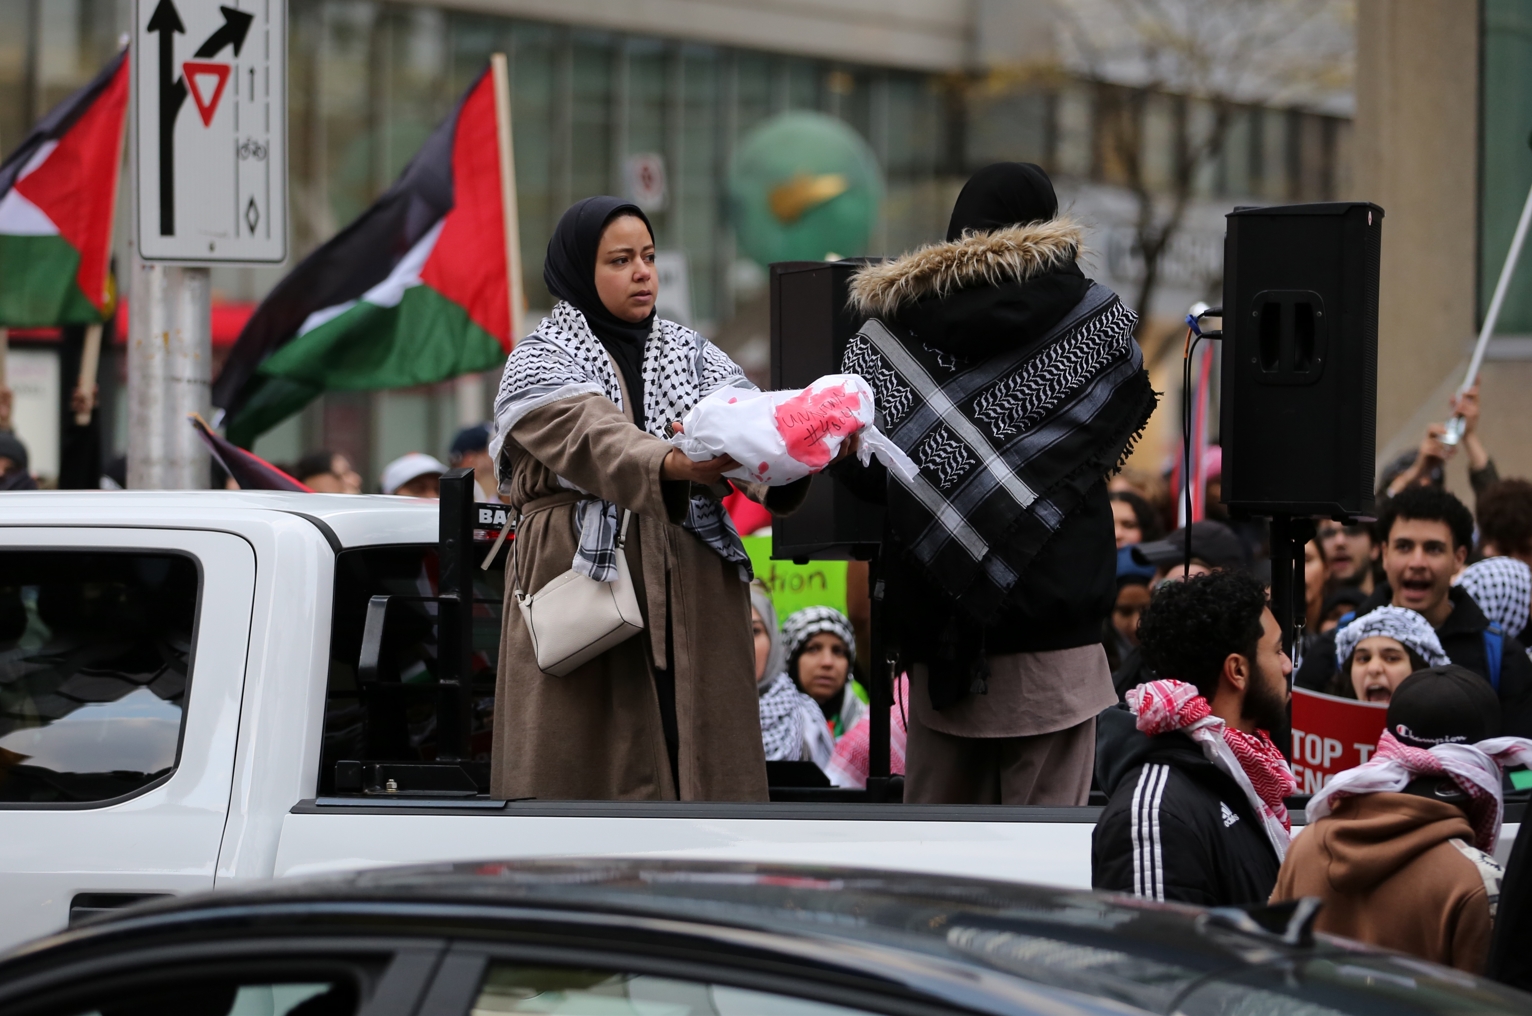 Kanada'nın Toronto kentindeki işgalci İsrail Başkonsolosluğu önünde toplanan protestocular, Siyonist İsrail hükümetinin Gazze'deki saldırılarını kınamak için bir araya geldi. Göstericiler bayrak ve pankart taşıyarak slogan attı.
